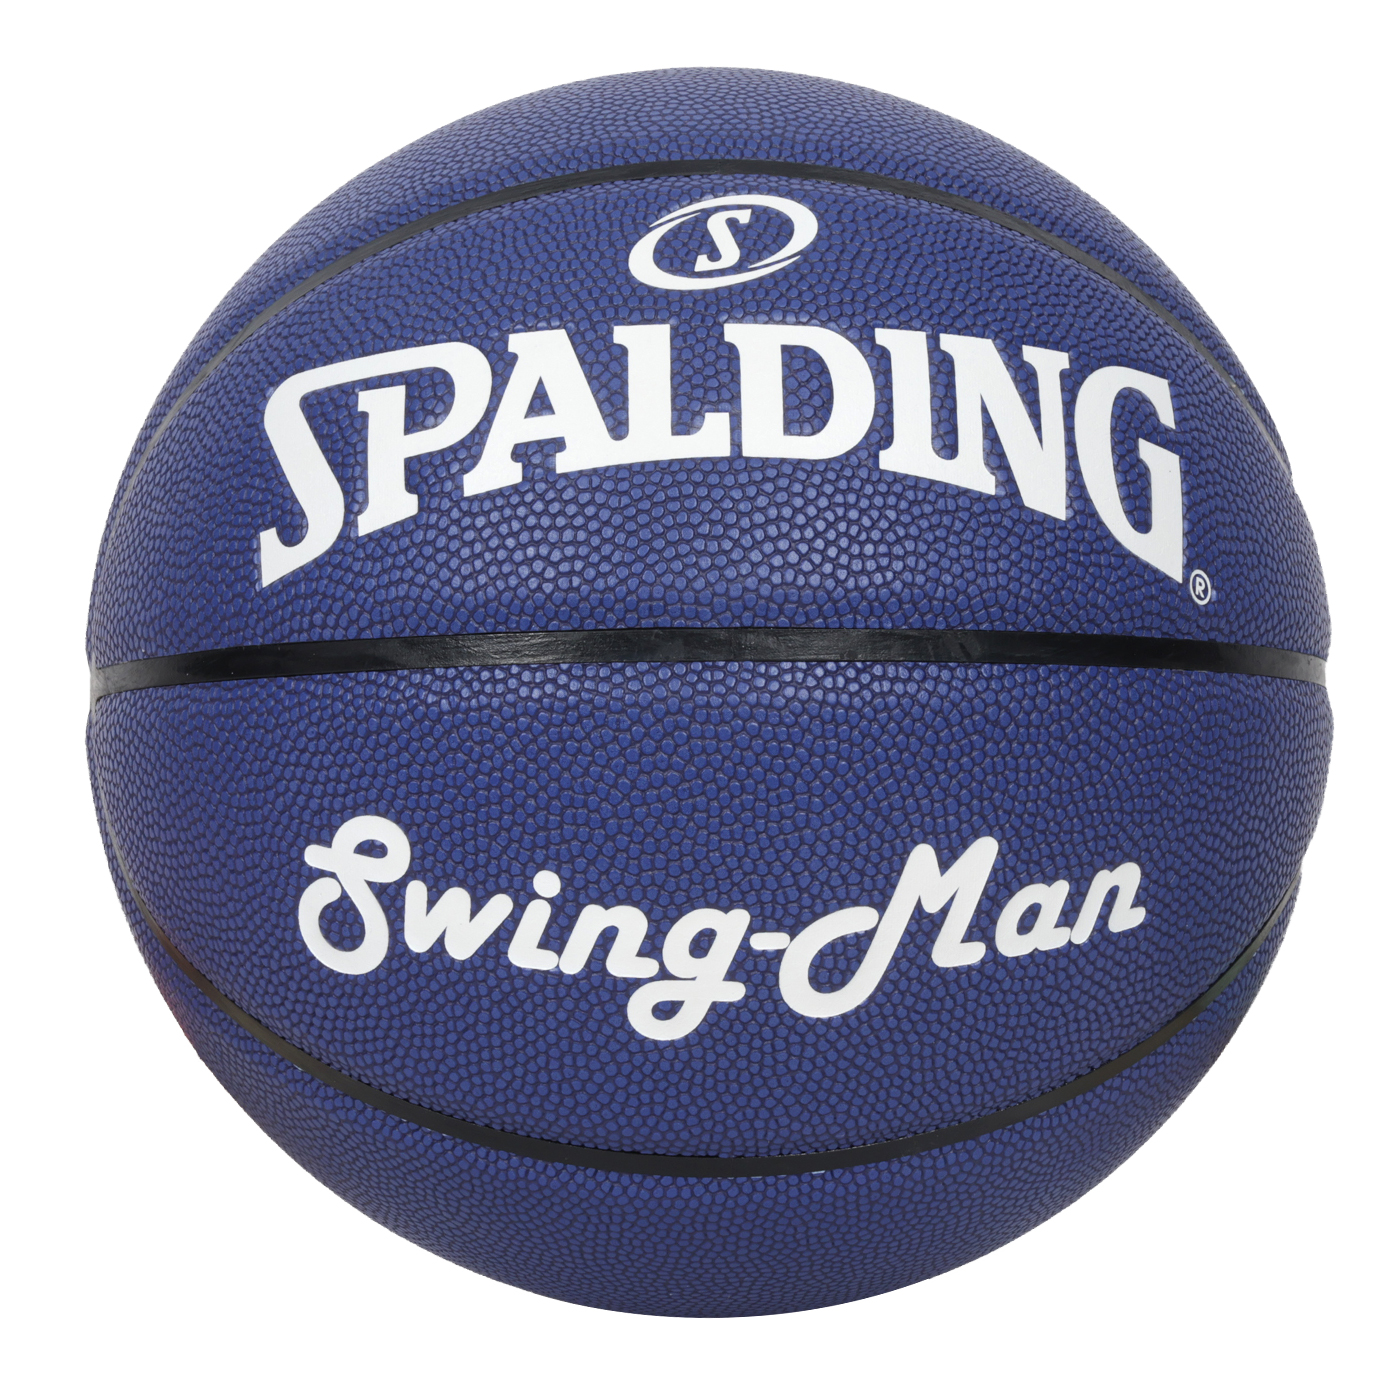 SPALDING Swingman系列#7合成皮籃球  SPB1131A7 - 深藍白